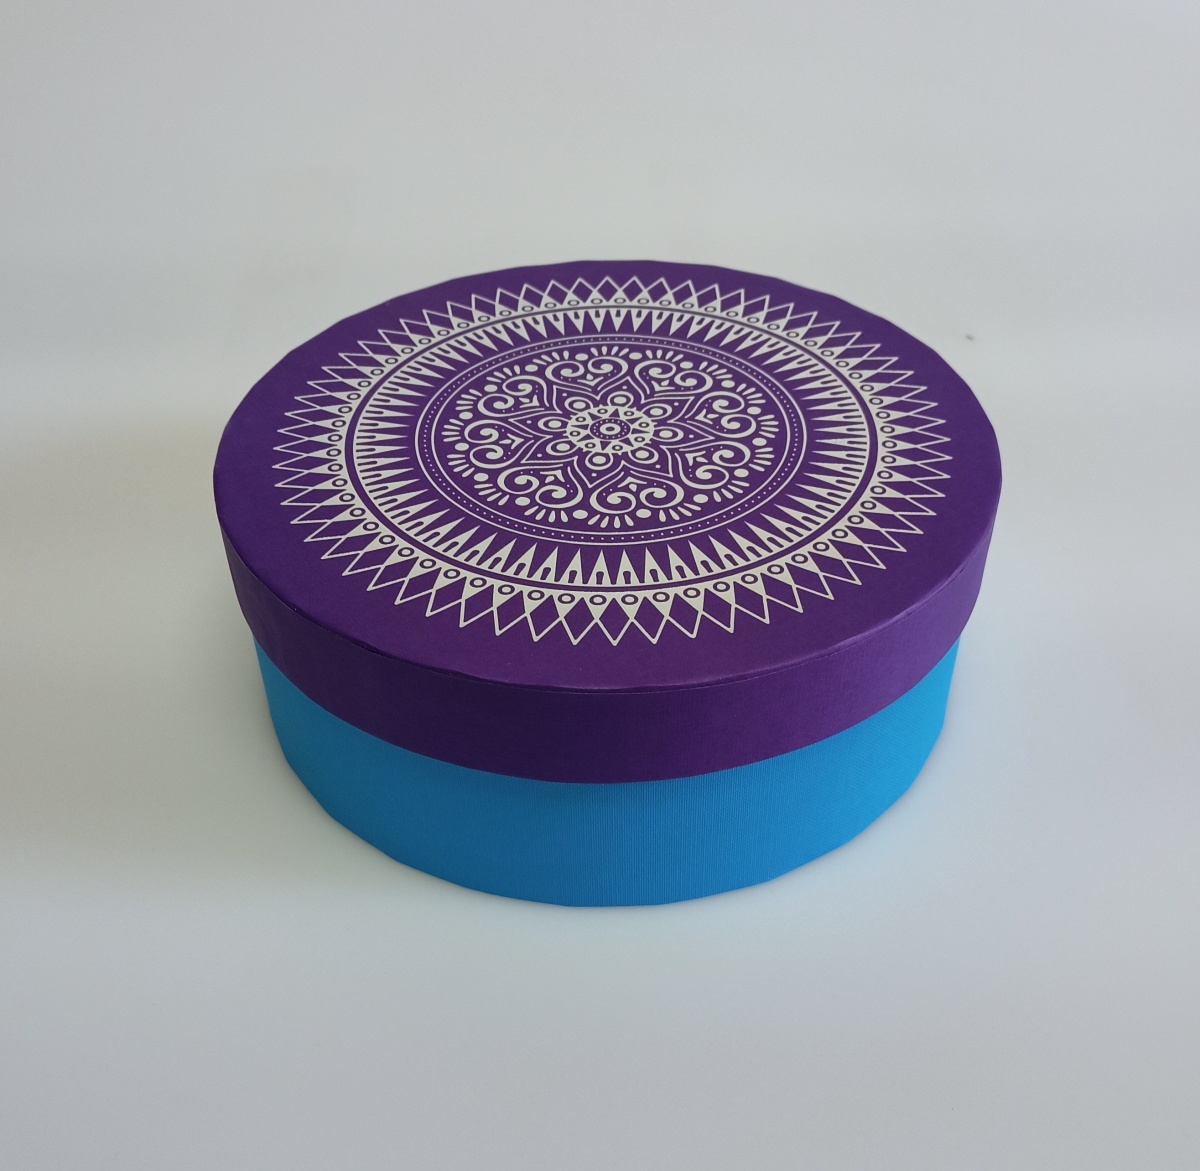 Коробка для хранения круглая,  22 x 8 см. "Мандалы", фиолетовый, голубой 